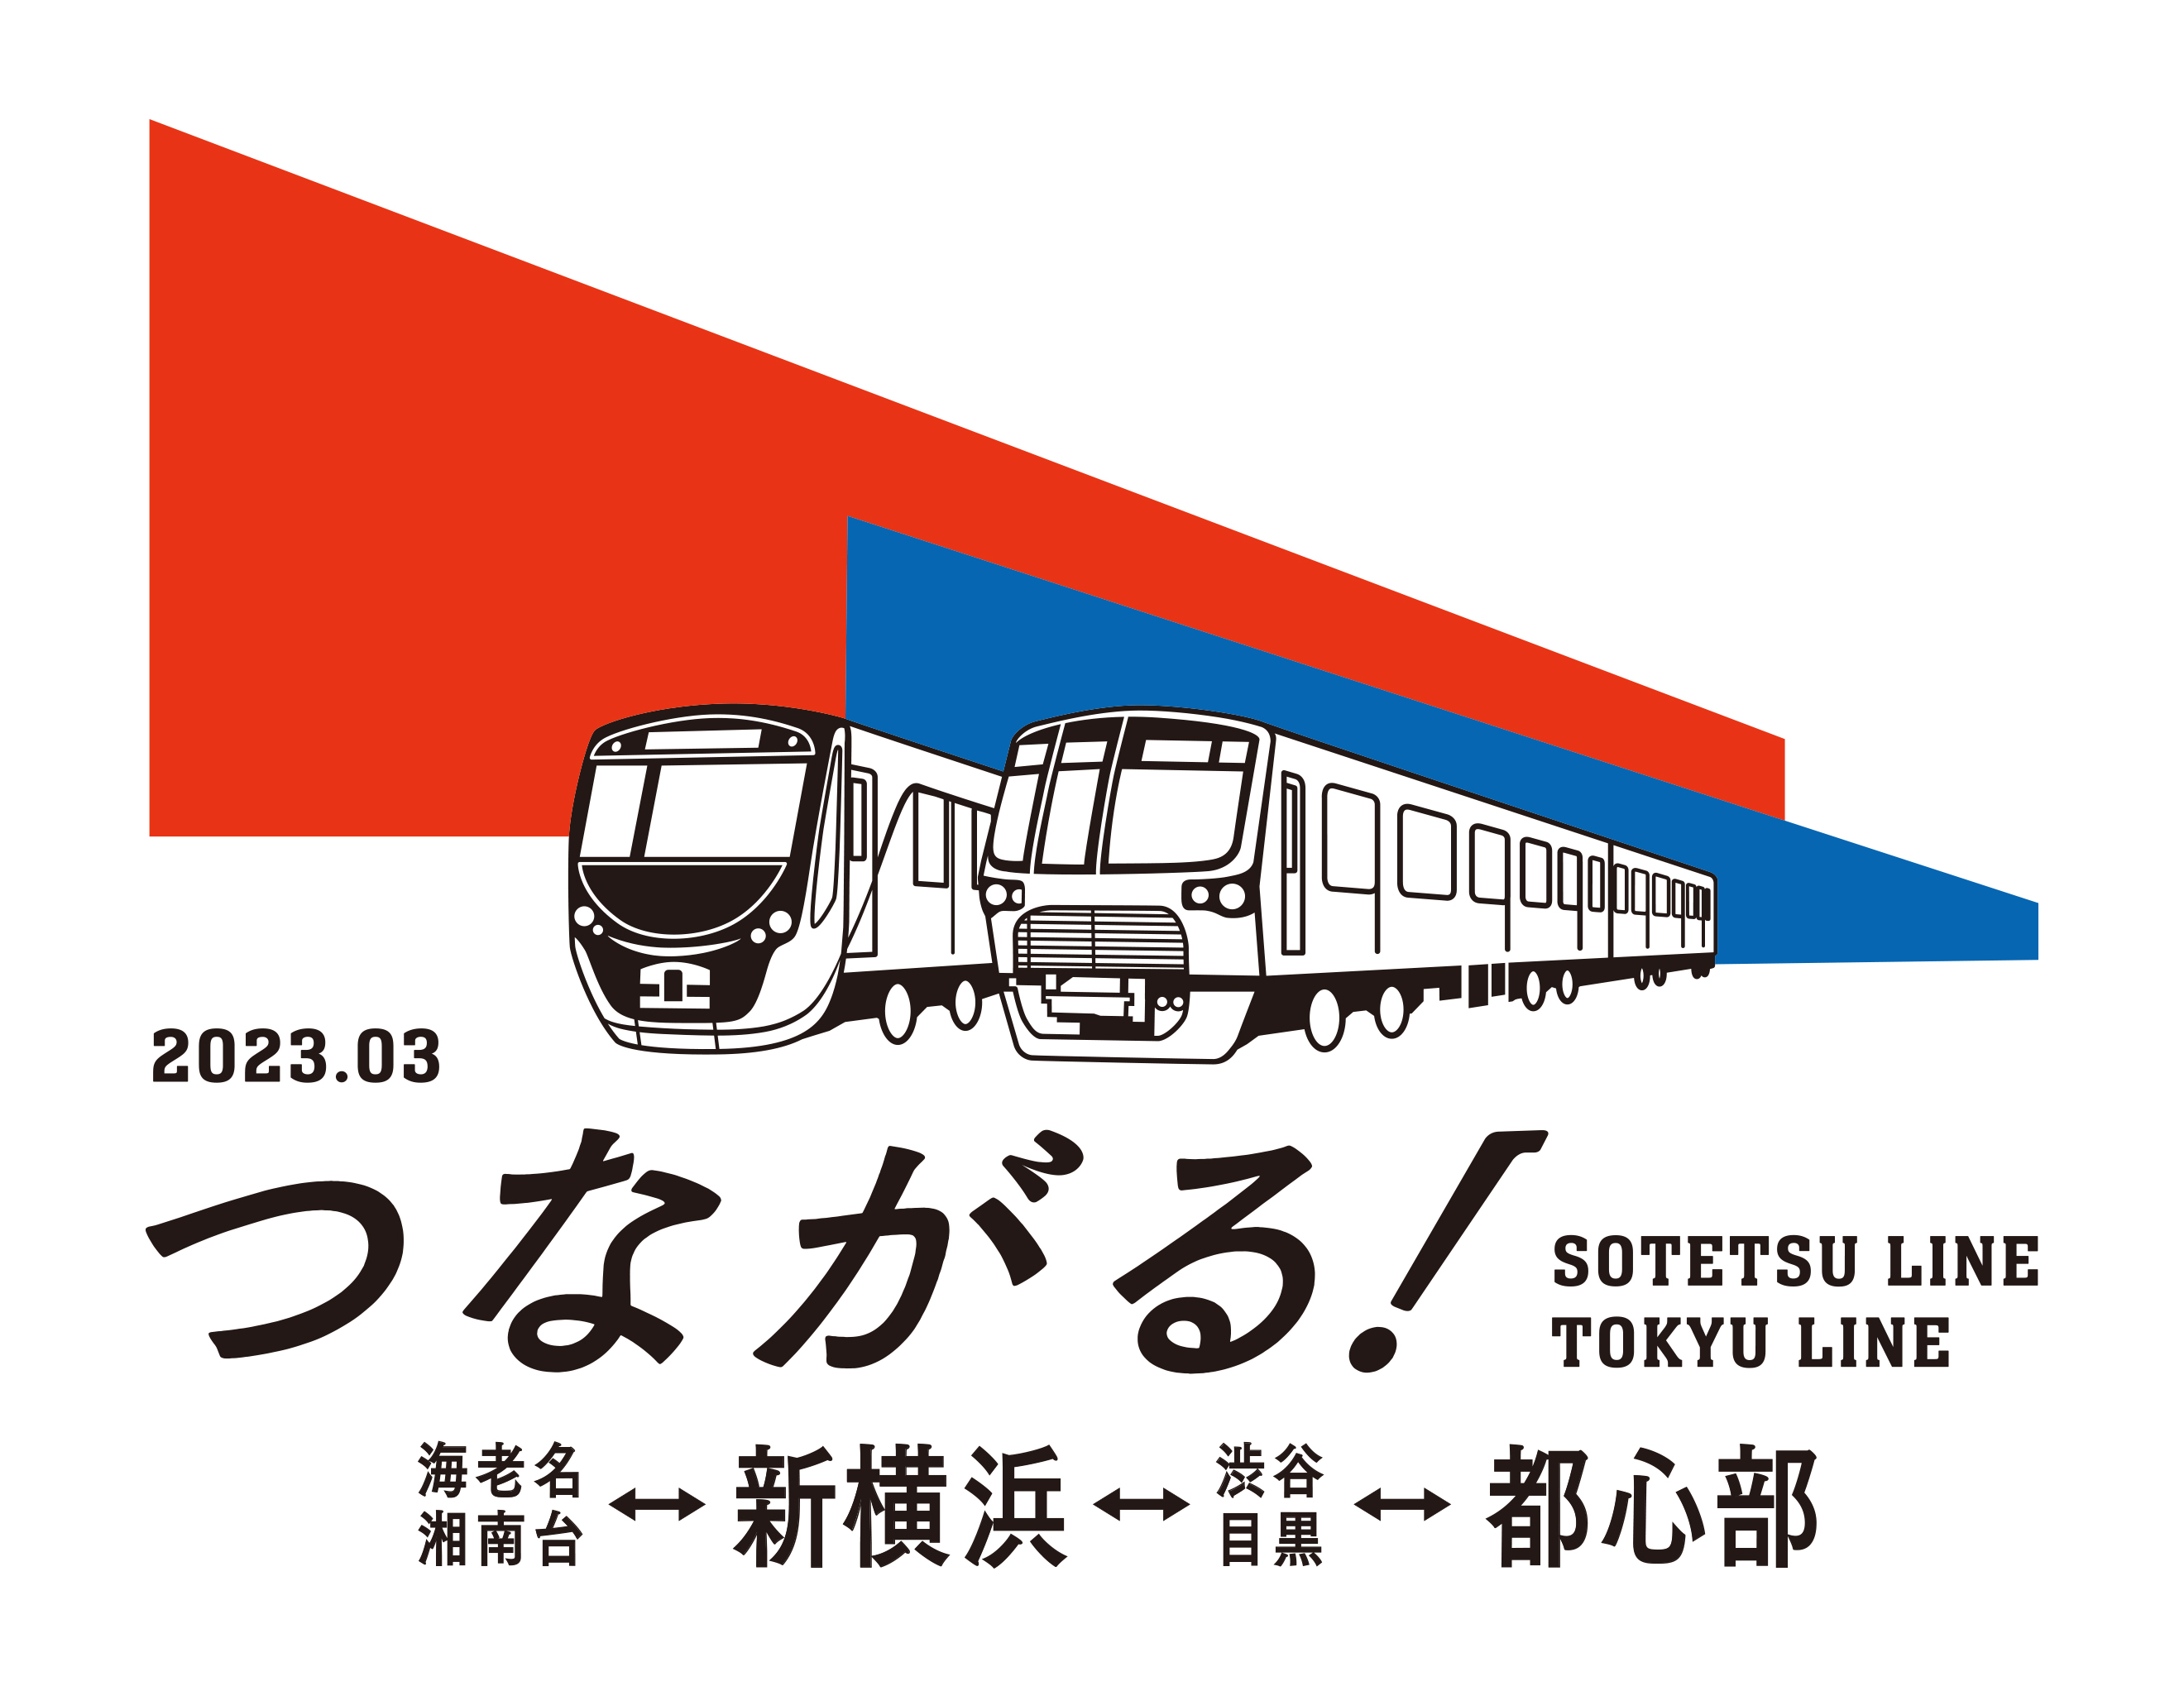 相鉄新横浜線・東急新横浜線 開業 PRロゴ・駅ナンバーを決定しました | NEWSCAST